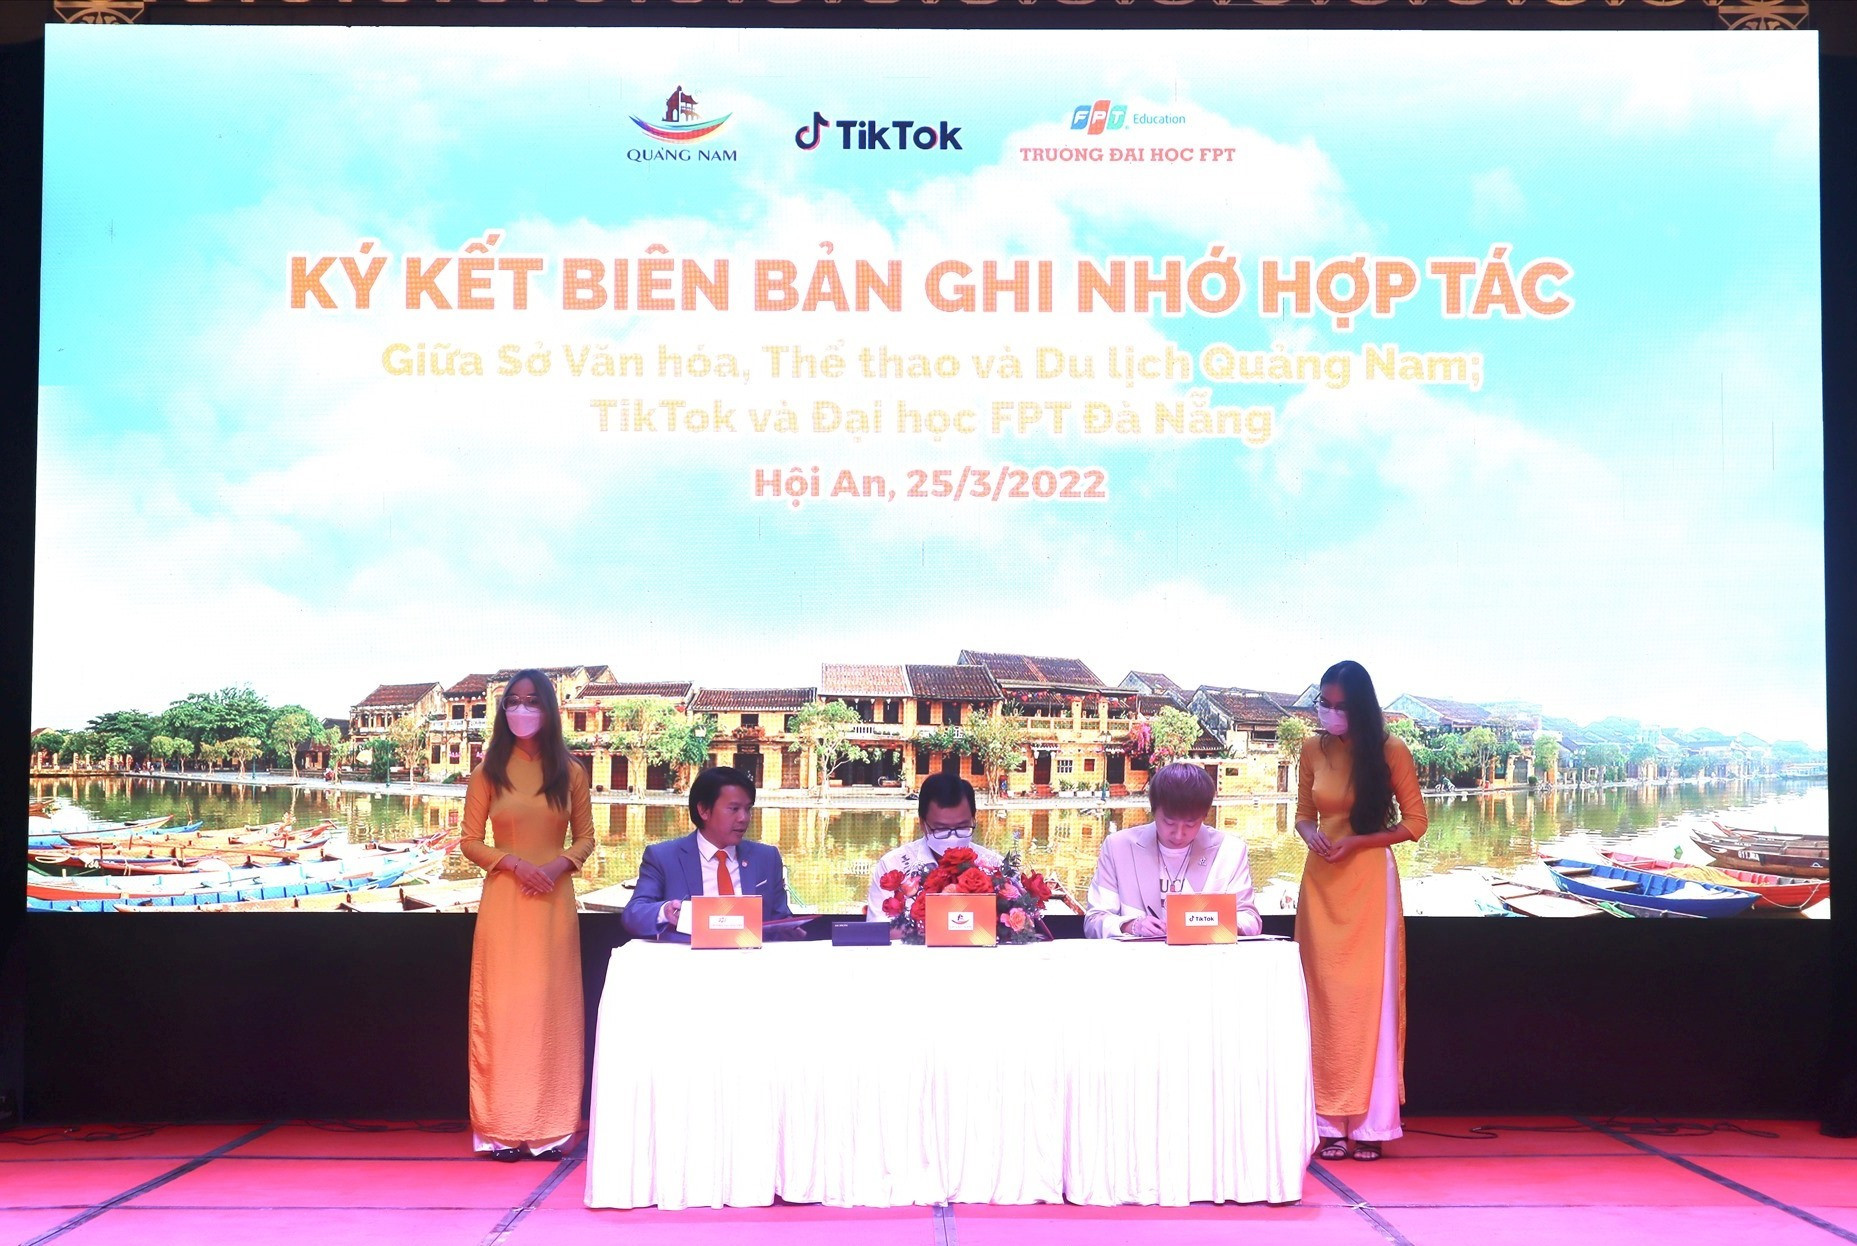 Lãnh đạo Sở VH-TT&DL Quảng Nam, Tiktok, trường Đại học FPT Đà Nẵng ký kết biên bản ghi nhớ hợp tác tại chương trình. Ảnh: Q.T